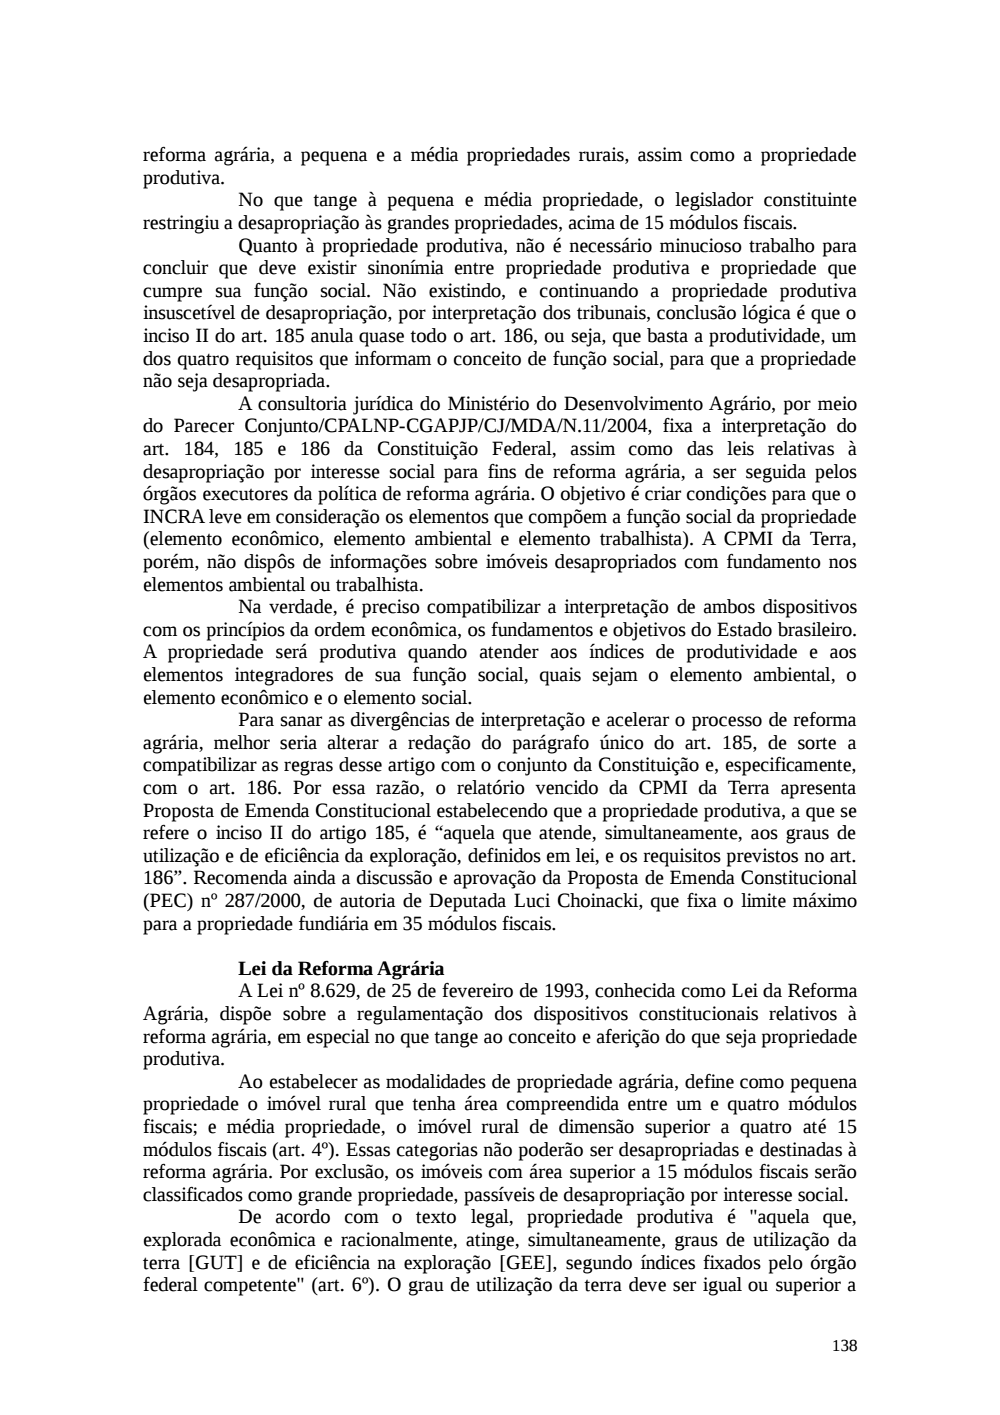 Page 138 from Relatório final da comissão